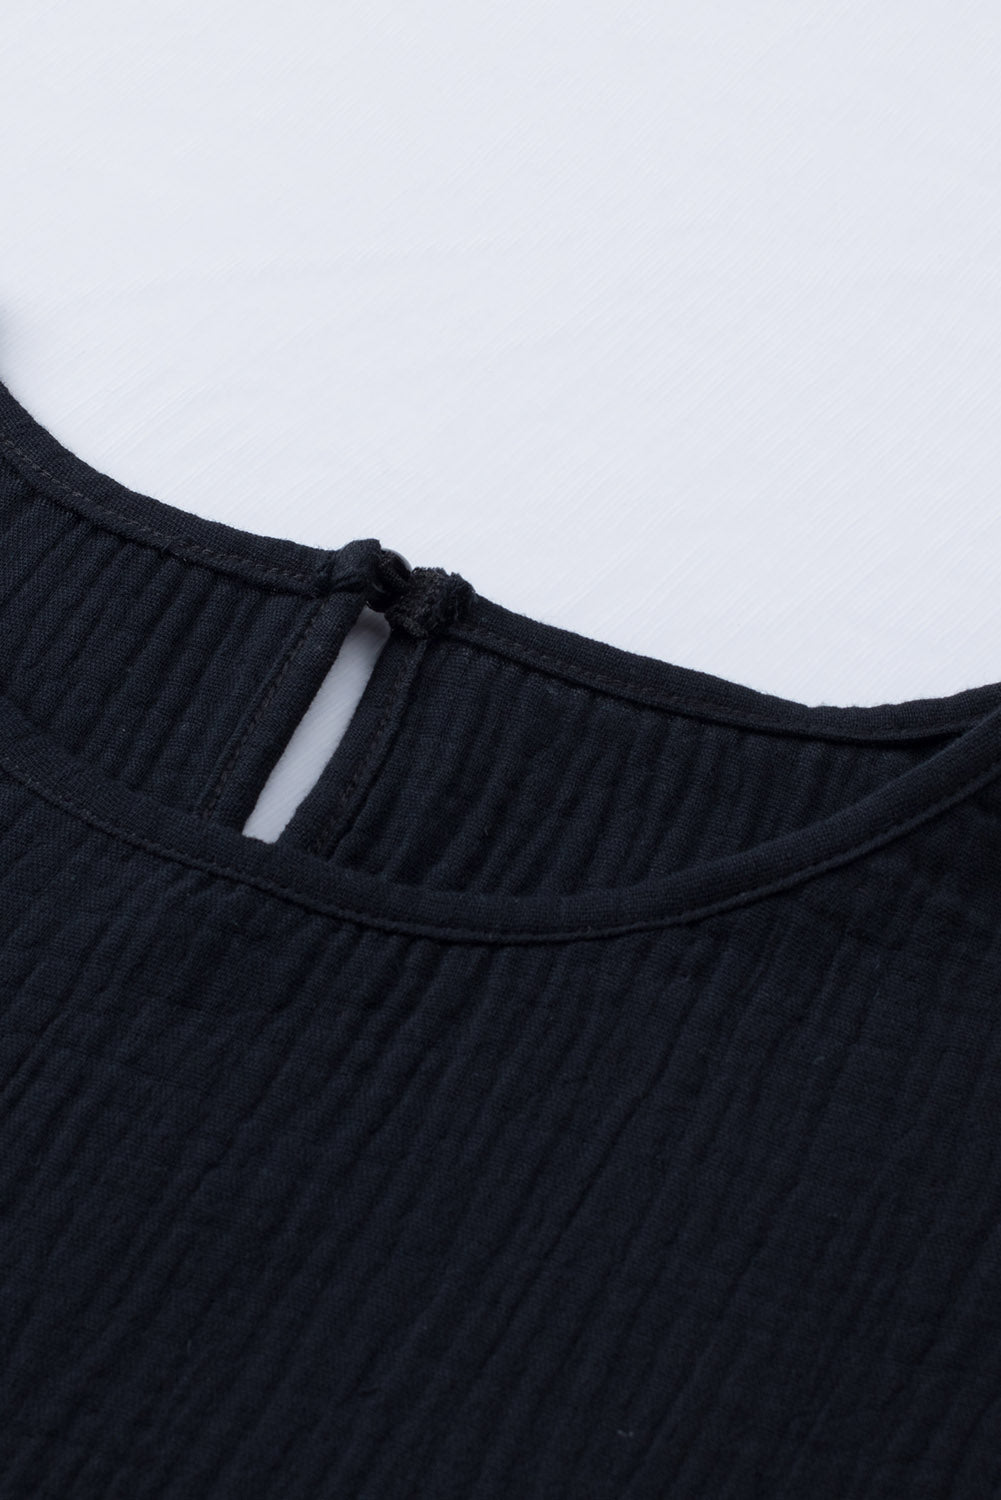 Črna teksturirana bluza s kratkimi rokavi v več stopnjah